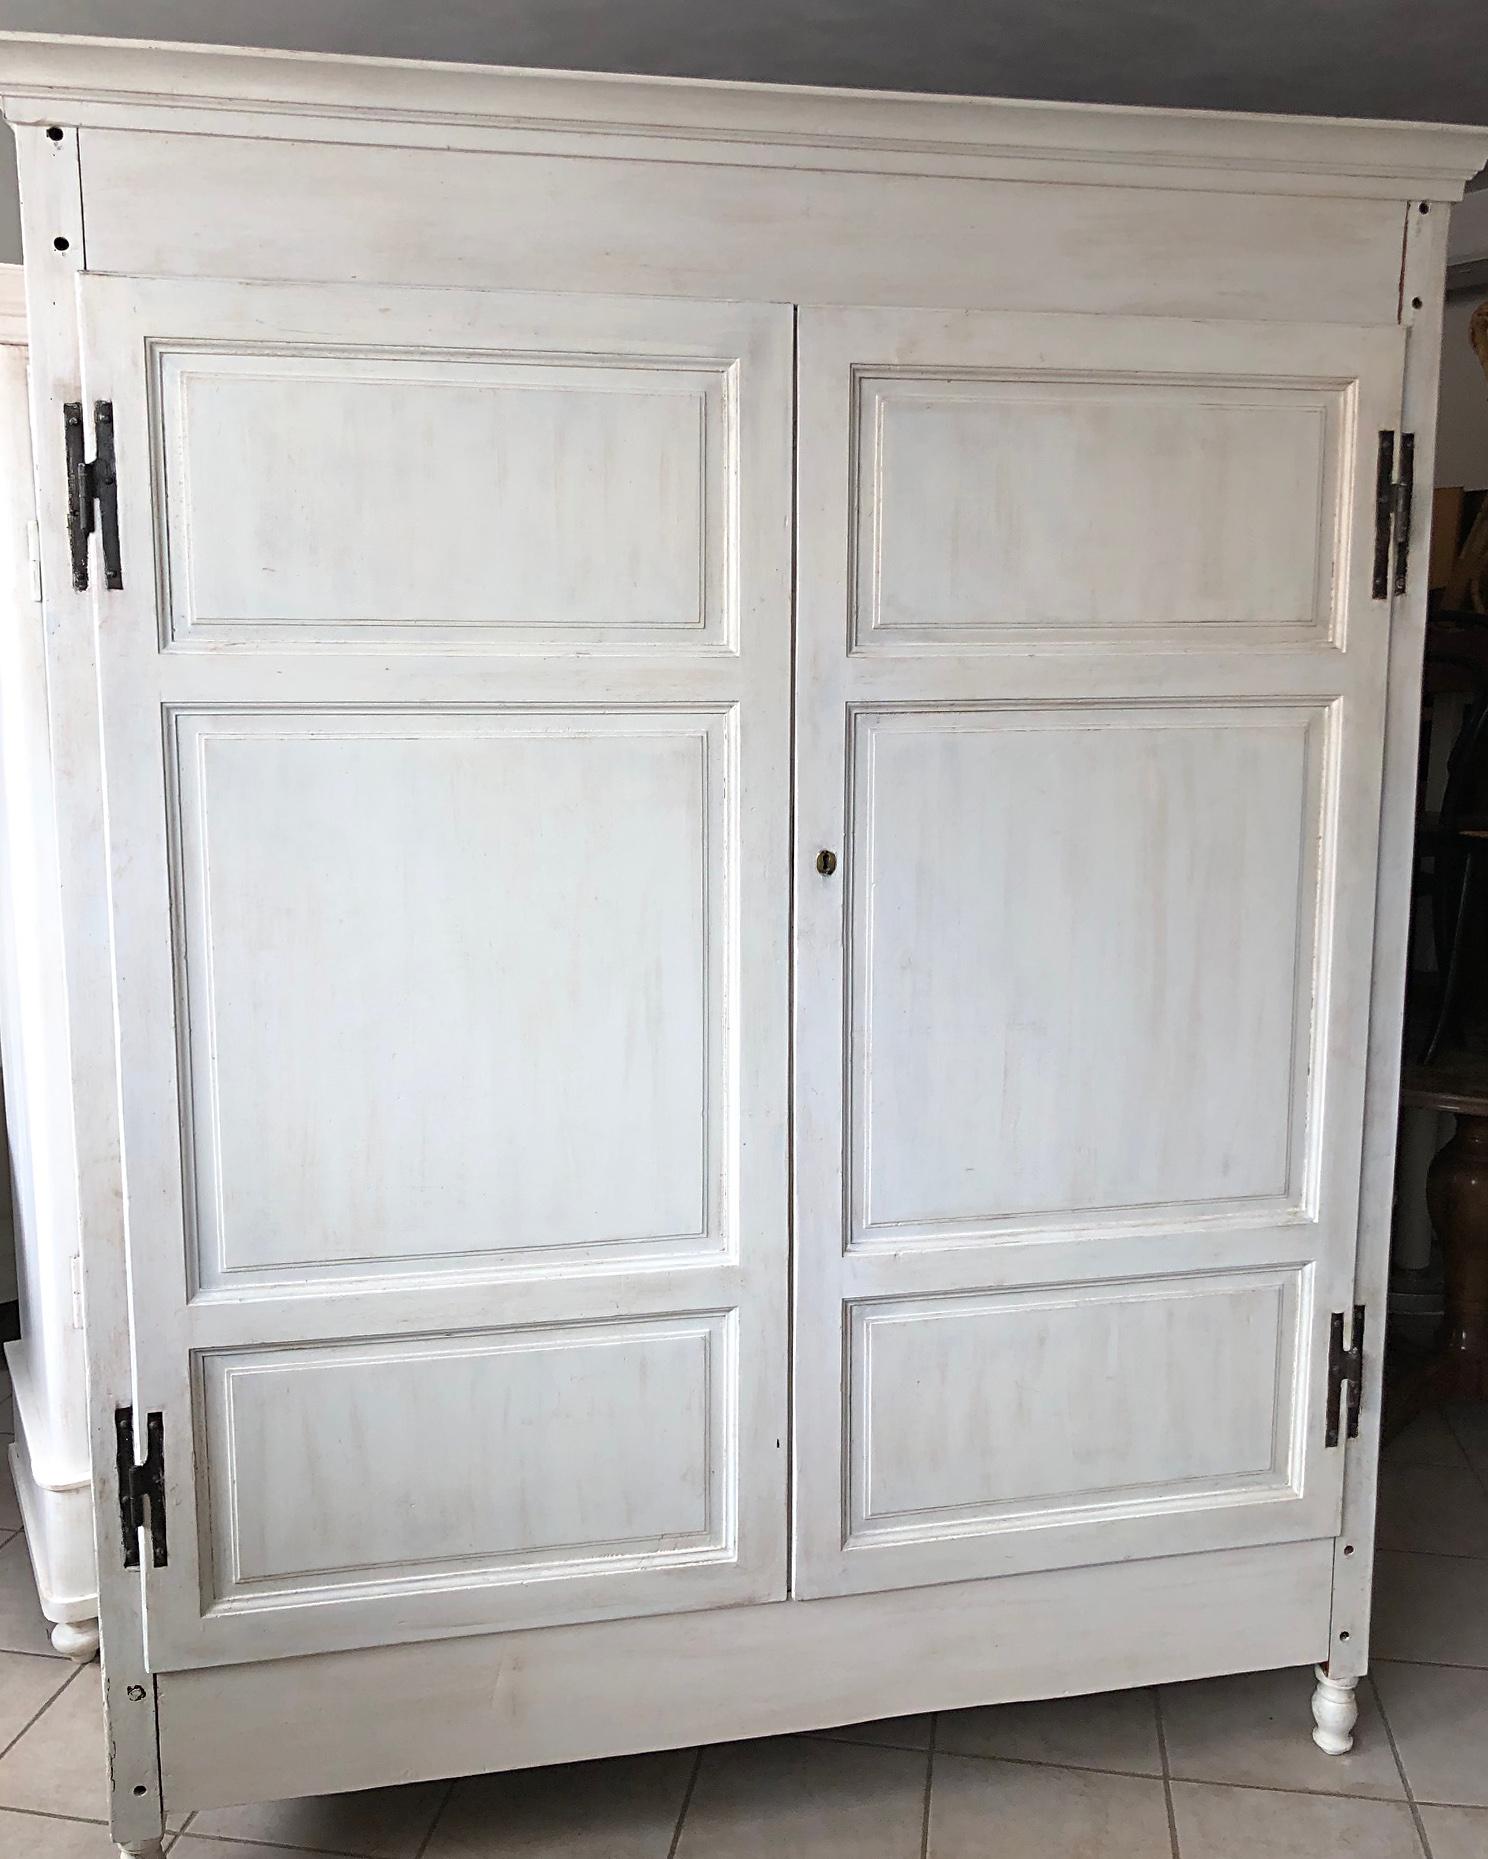 Armoire en blanc délavé, d'origine italienne, datant de 1870, avec deux tiroirs intérieurs et une tringle à vêtements.
L'armoire est entièrement amovible.
Le matériau est le Gattice, une sorte de peuplier local qui pousse près des marais de